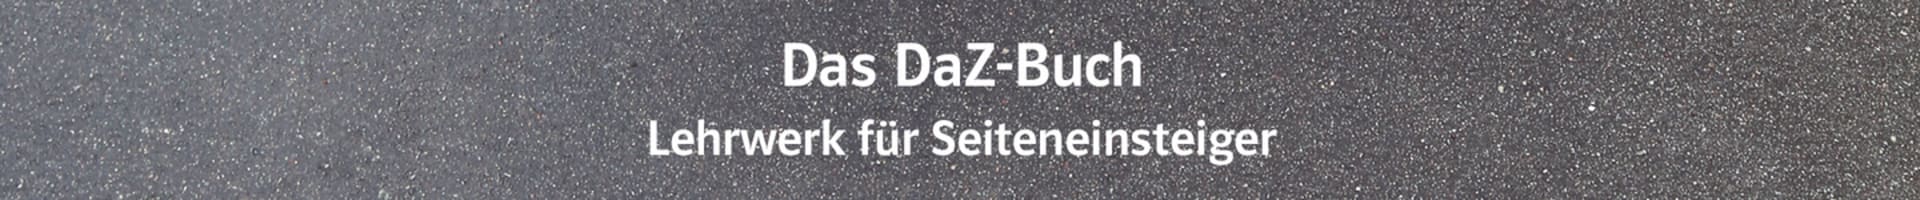 DaZ-Buch